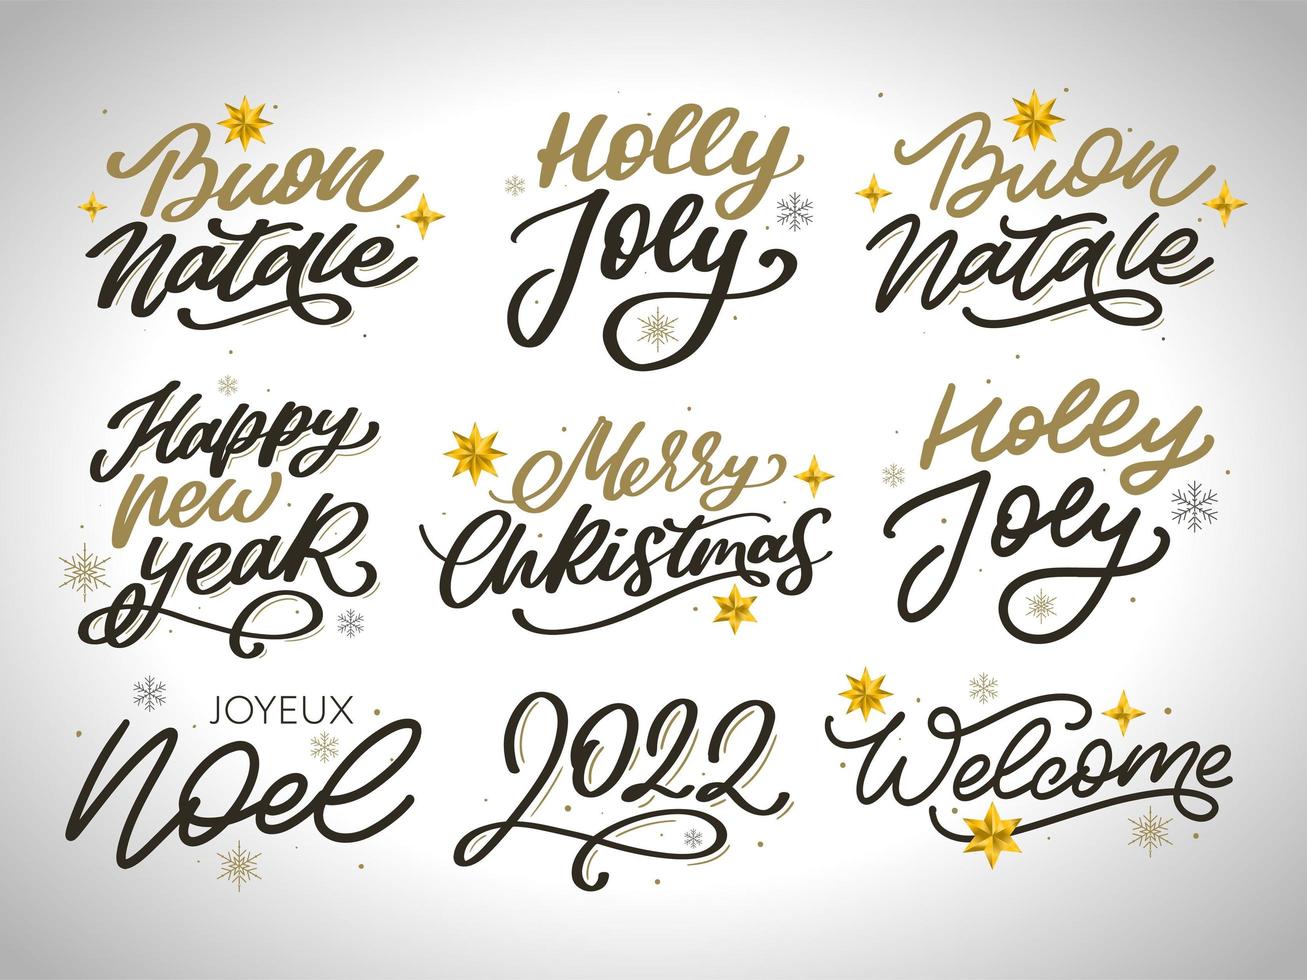 vrolijk kerstfeest nieuwjaar 2022 belettering kalligrafie ontwerpset. vector illustratie